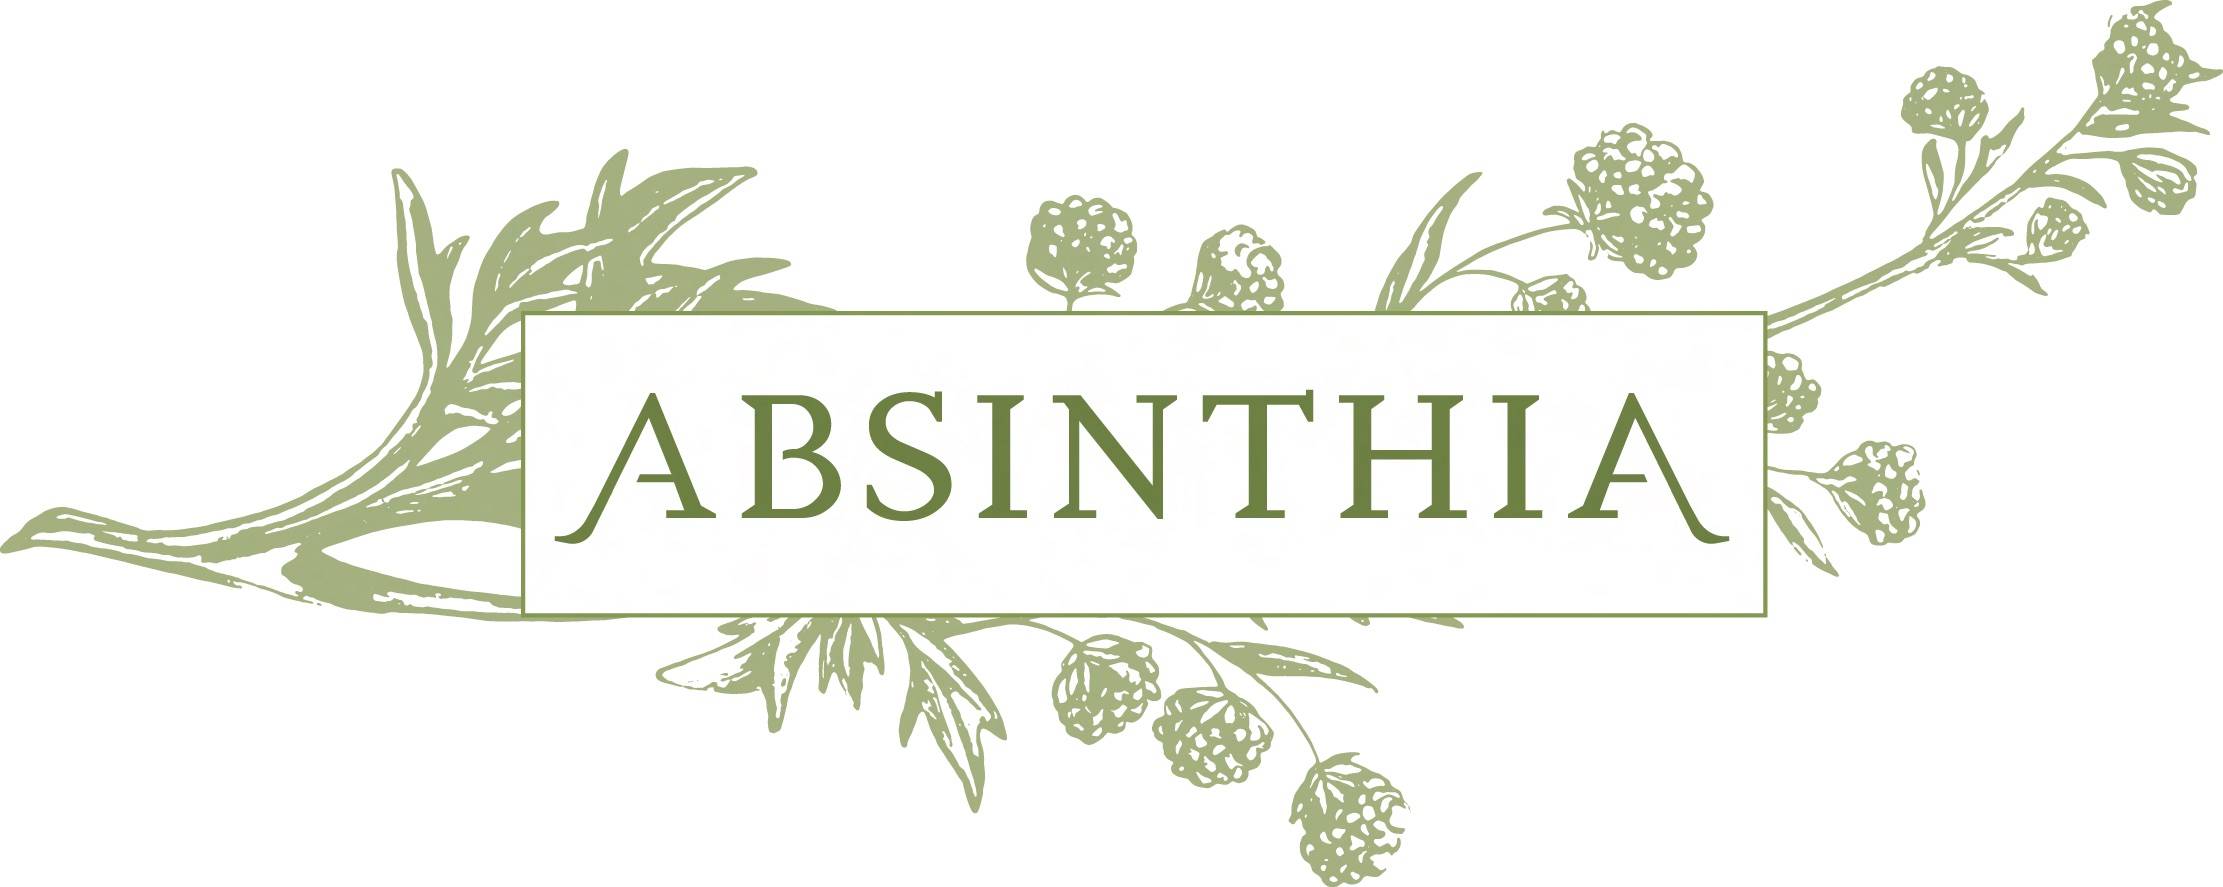 Absinthia Bottled Spirits Logo